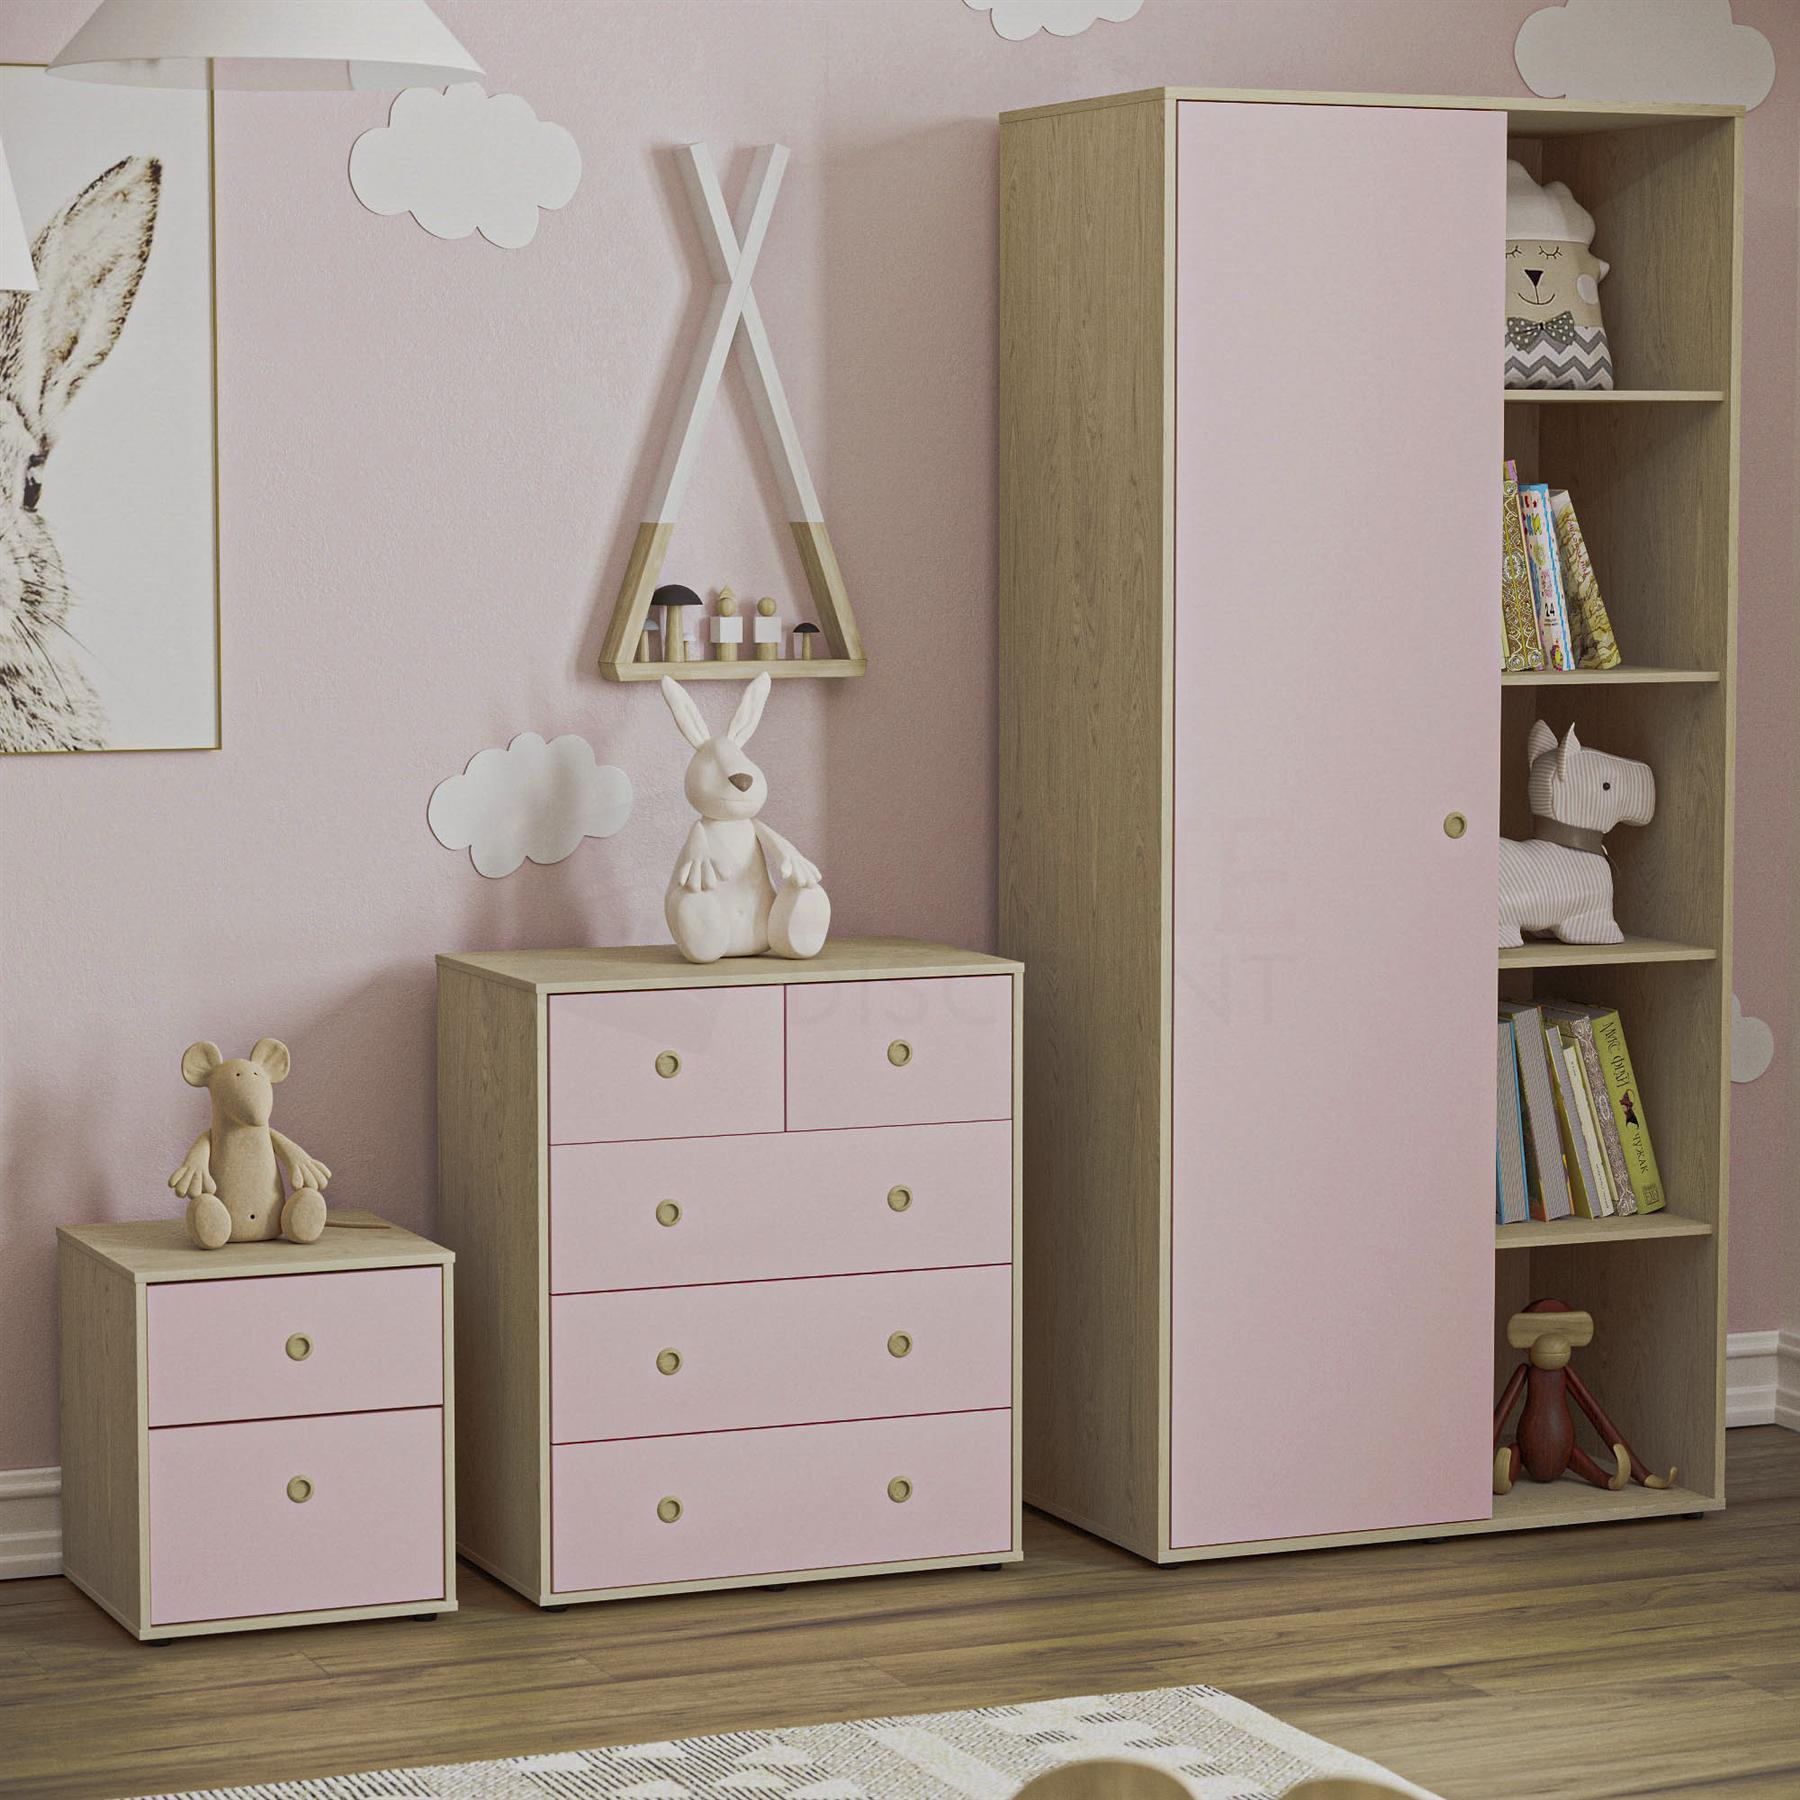 Junior Vida Neptune 3 Piece Bedroom Set Storage Furniture (Bedside Table, Drawer Chest, Wardrobe) - image 1